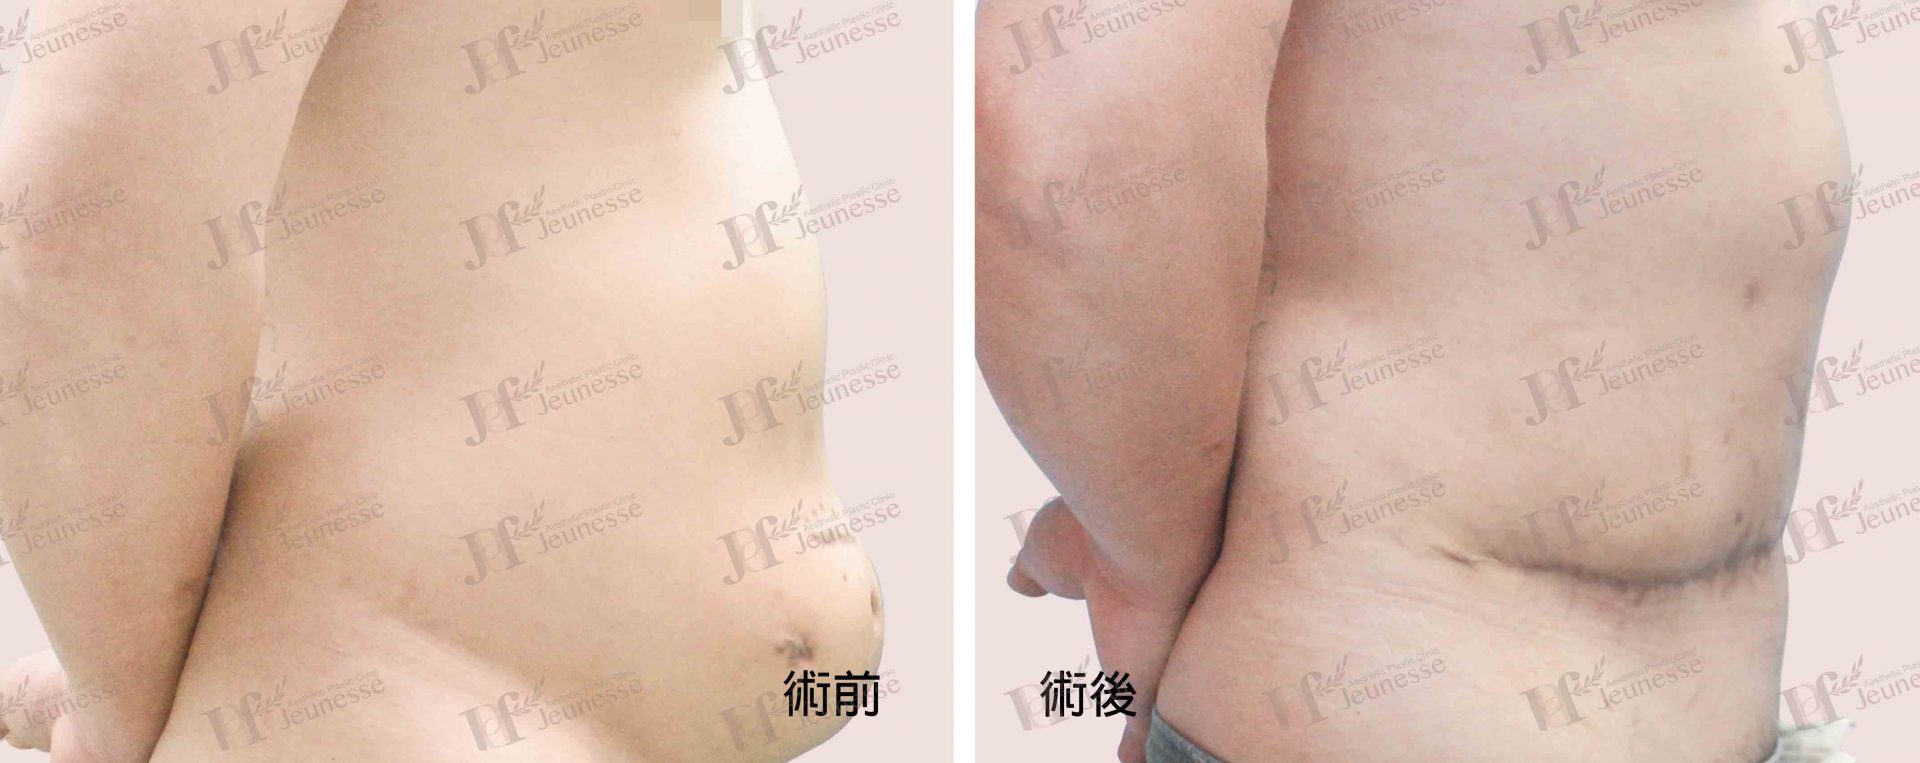 Abdominoplasty腹部成形術及抽脂手術 case 2 側面-浮水印